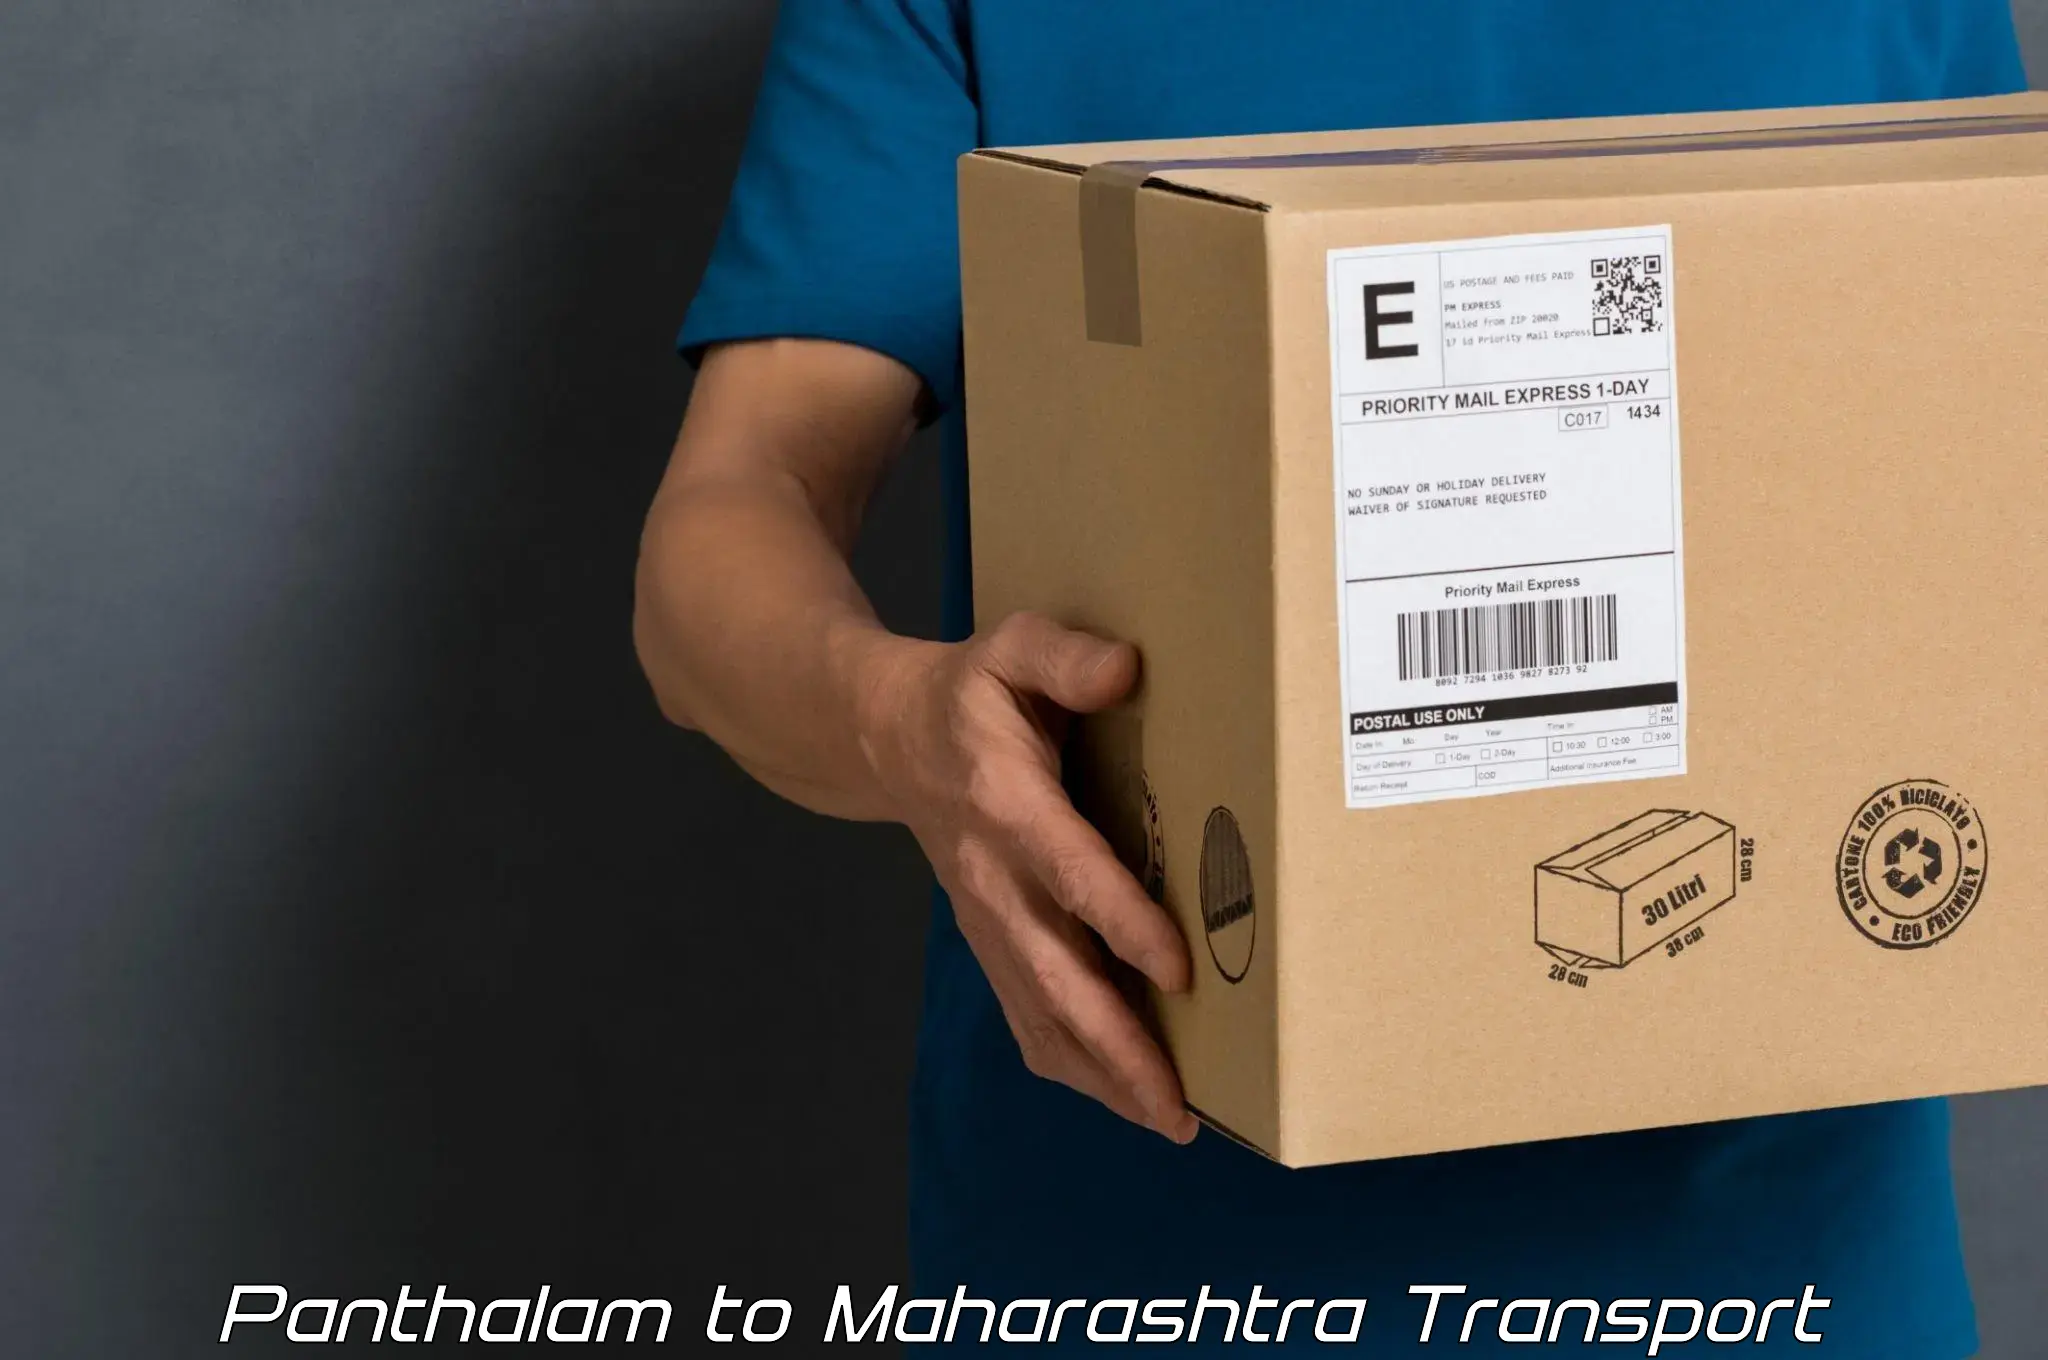 Furniture transport service Panthalam to Pune